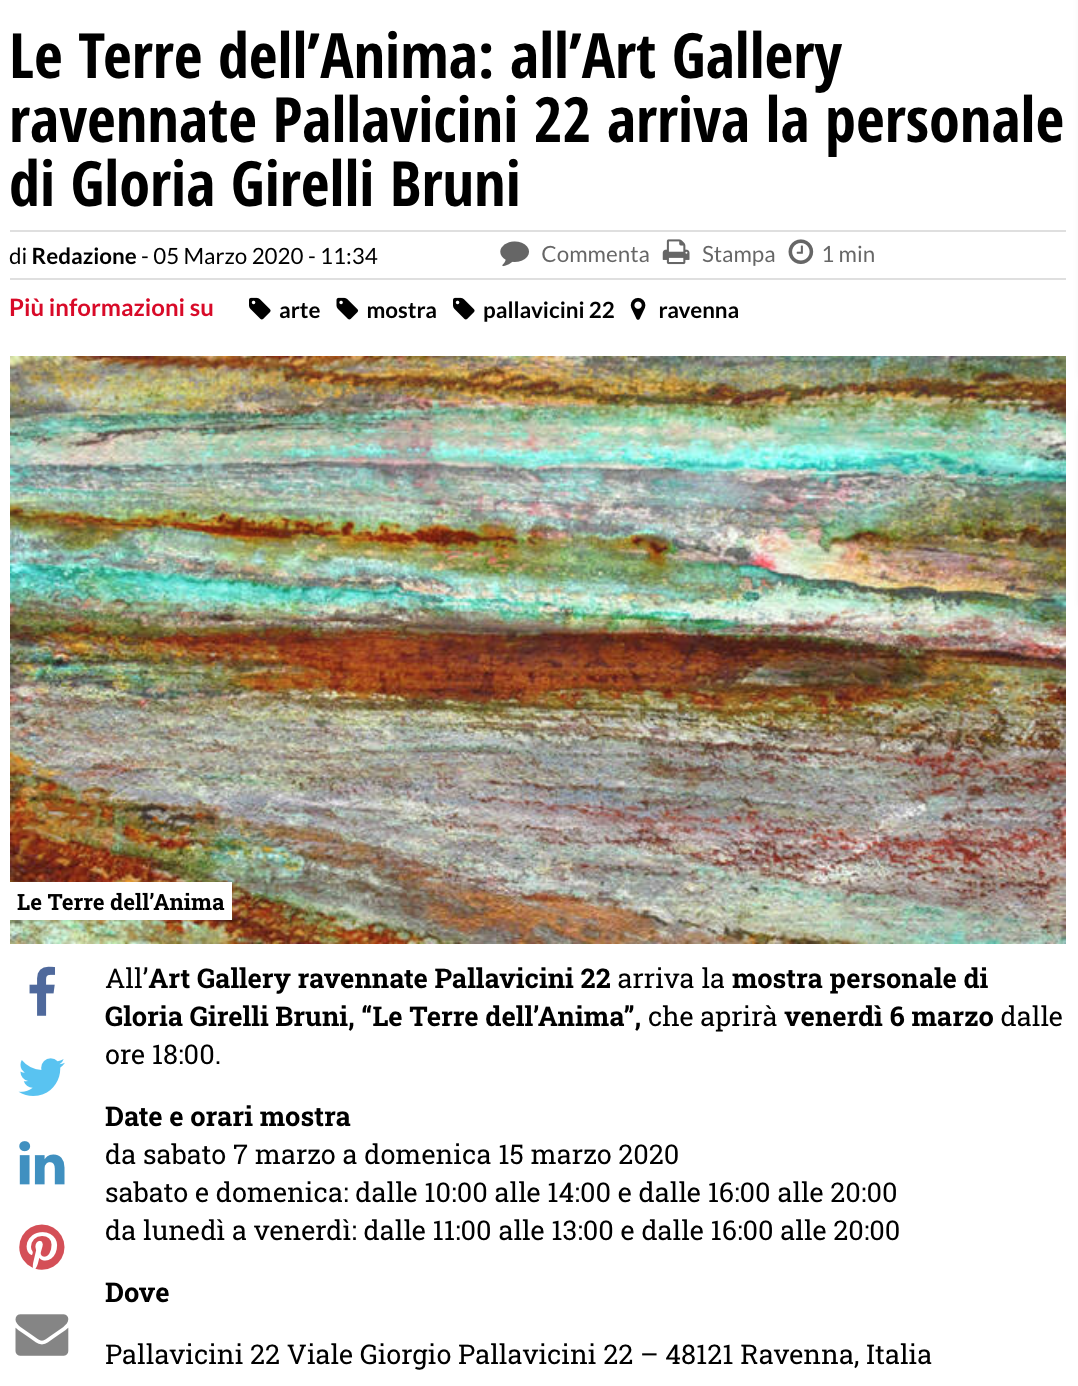 Le Terre dell'Anima di Gloria Girelli Bruni su Ravennanotizie.it | Pallavicini22 spazio espositivo Ravenna